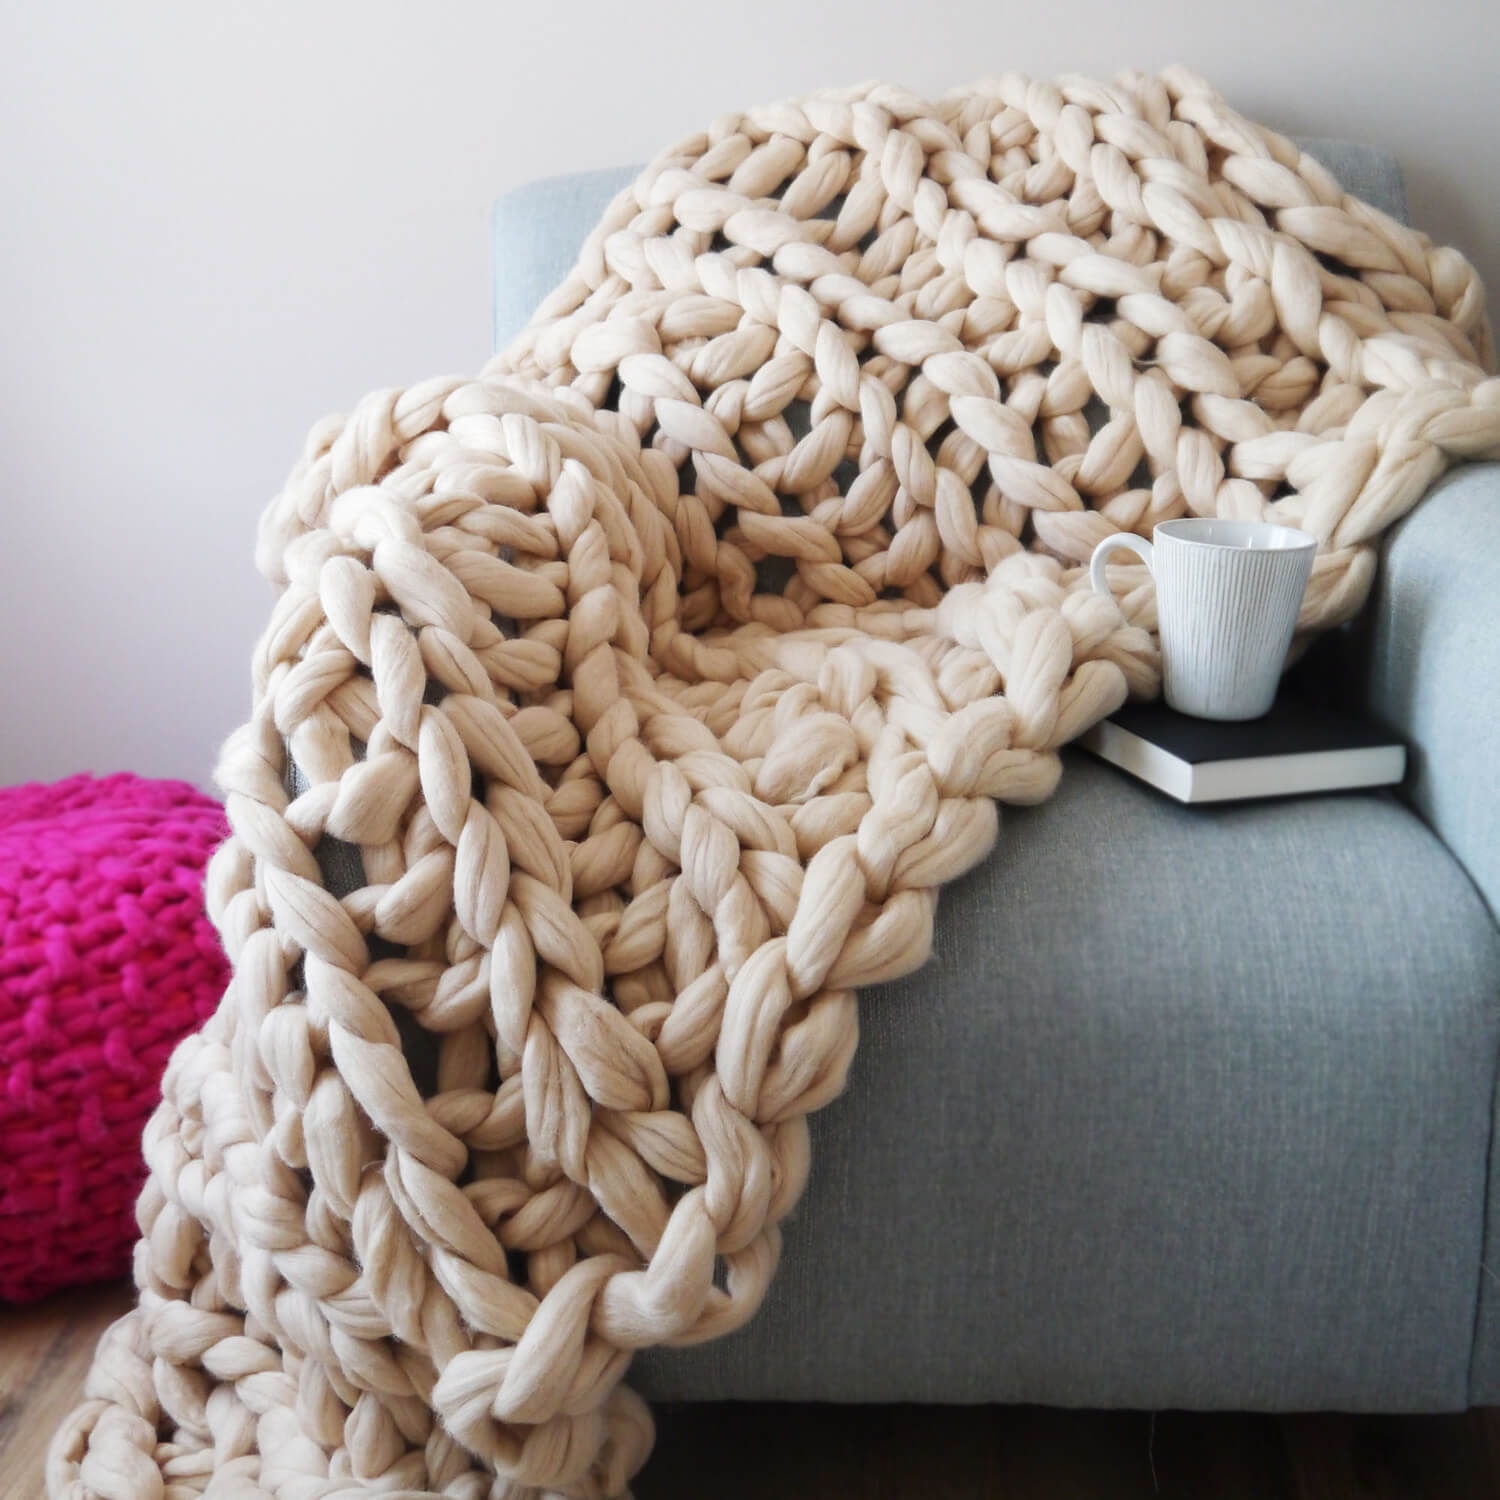 Knitting Kit - Beginners Blanket - Lauren Aston Designs